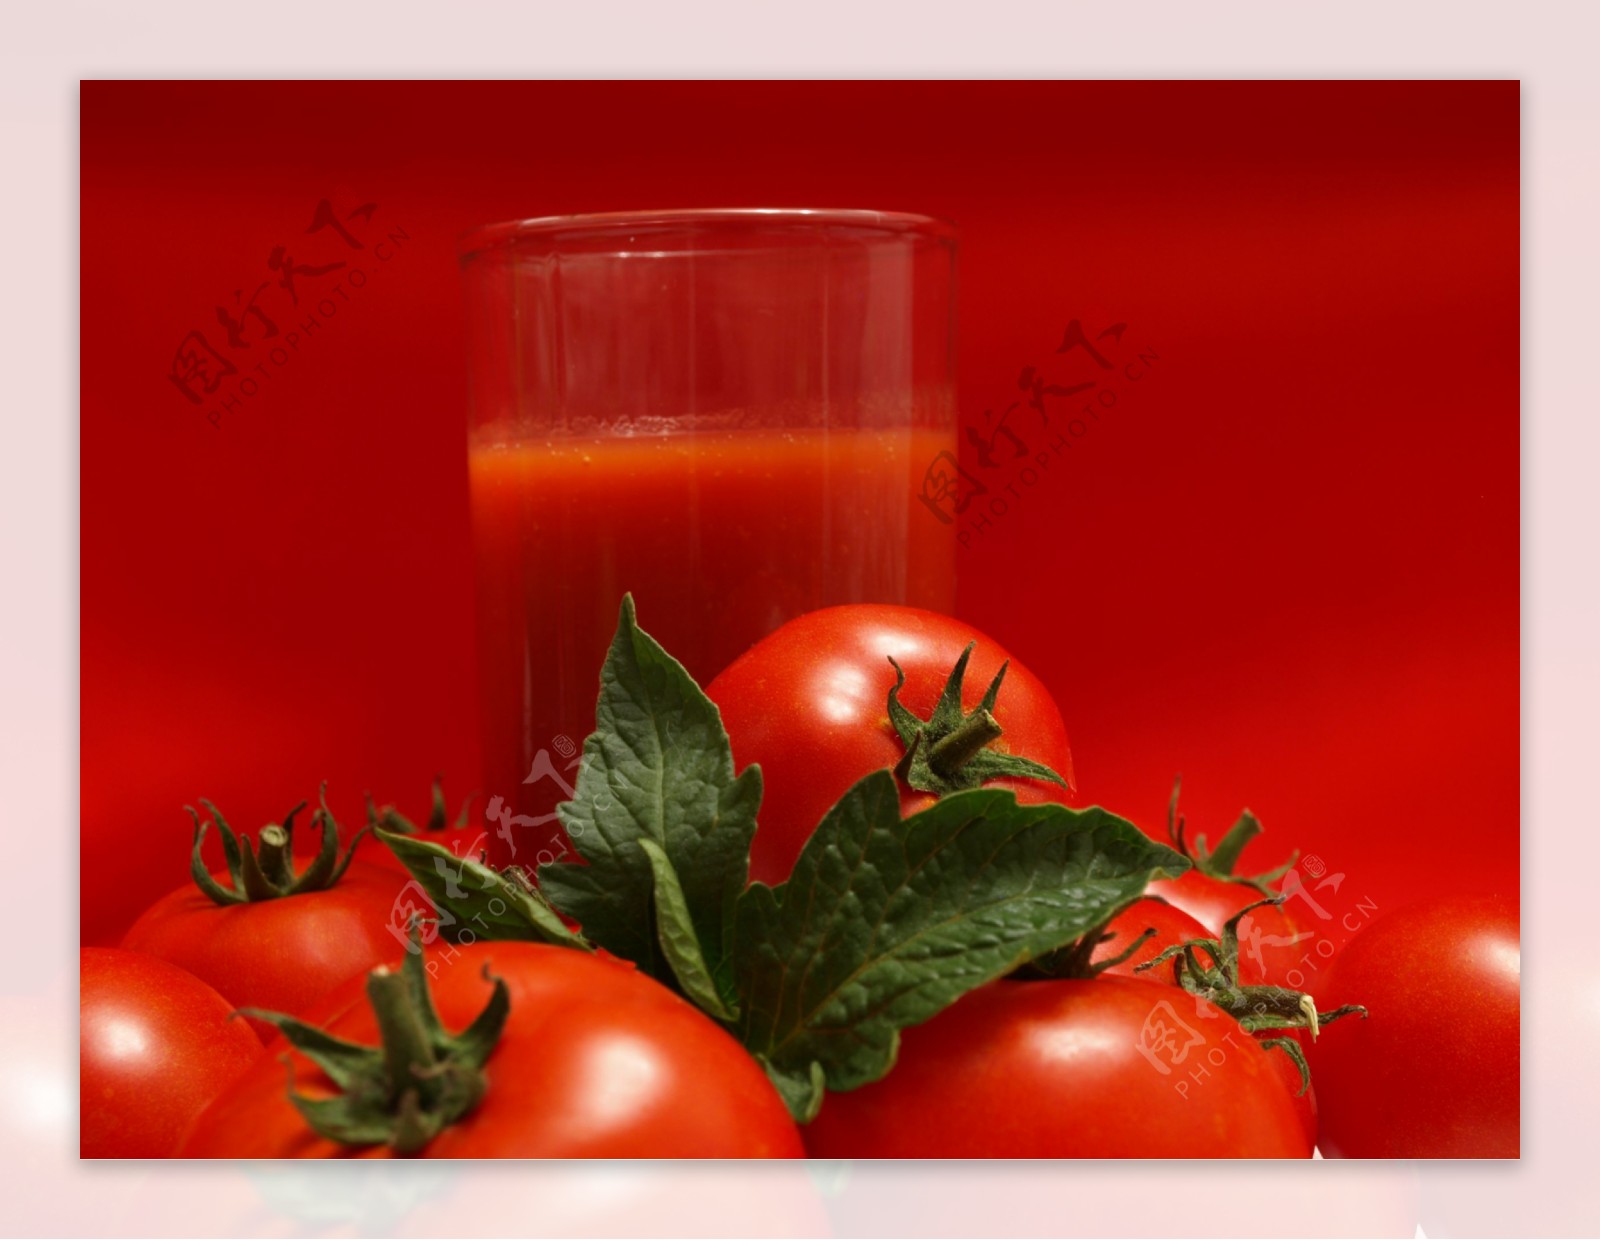 蕃茄汁与蕃茄